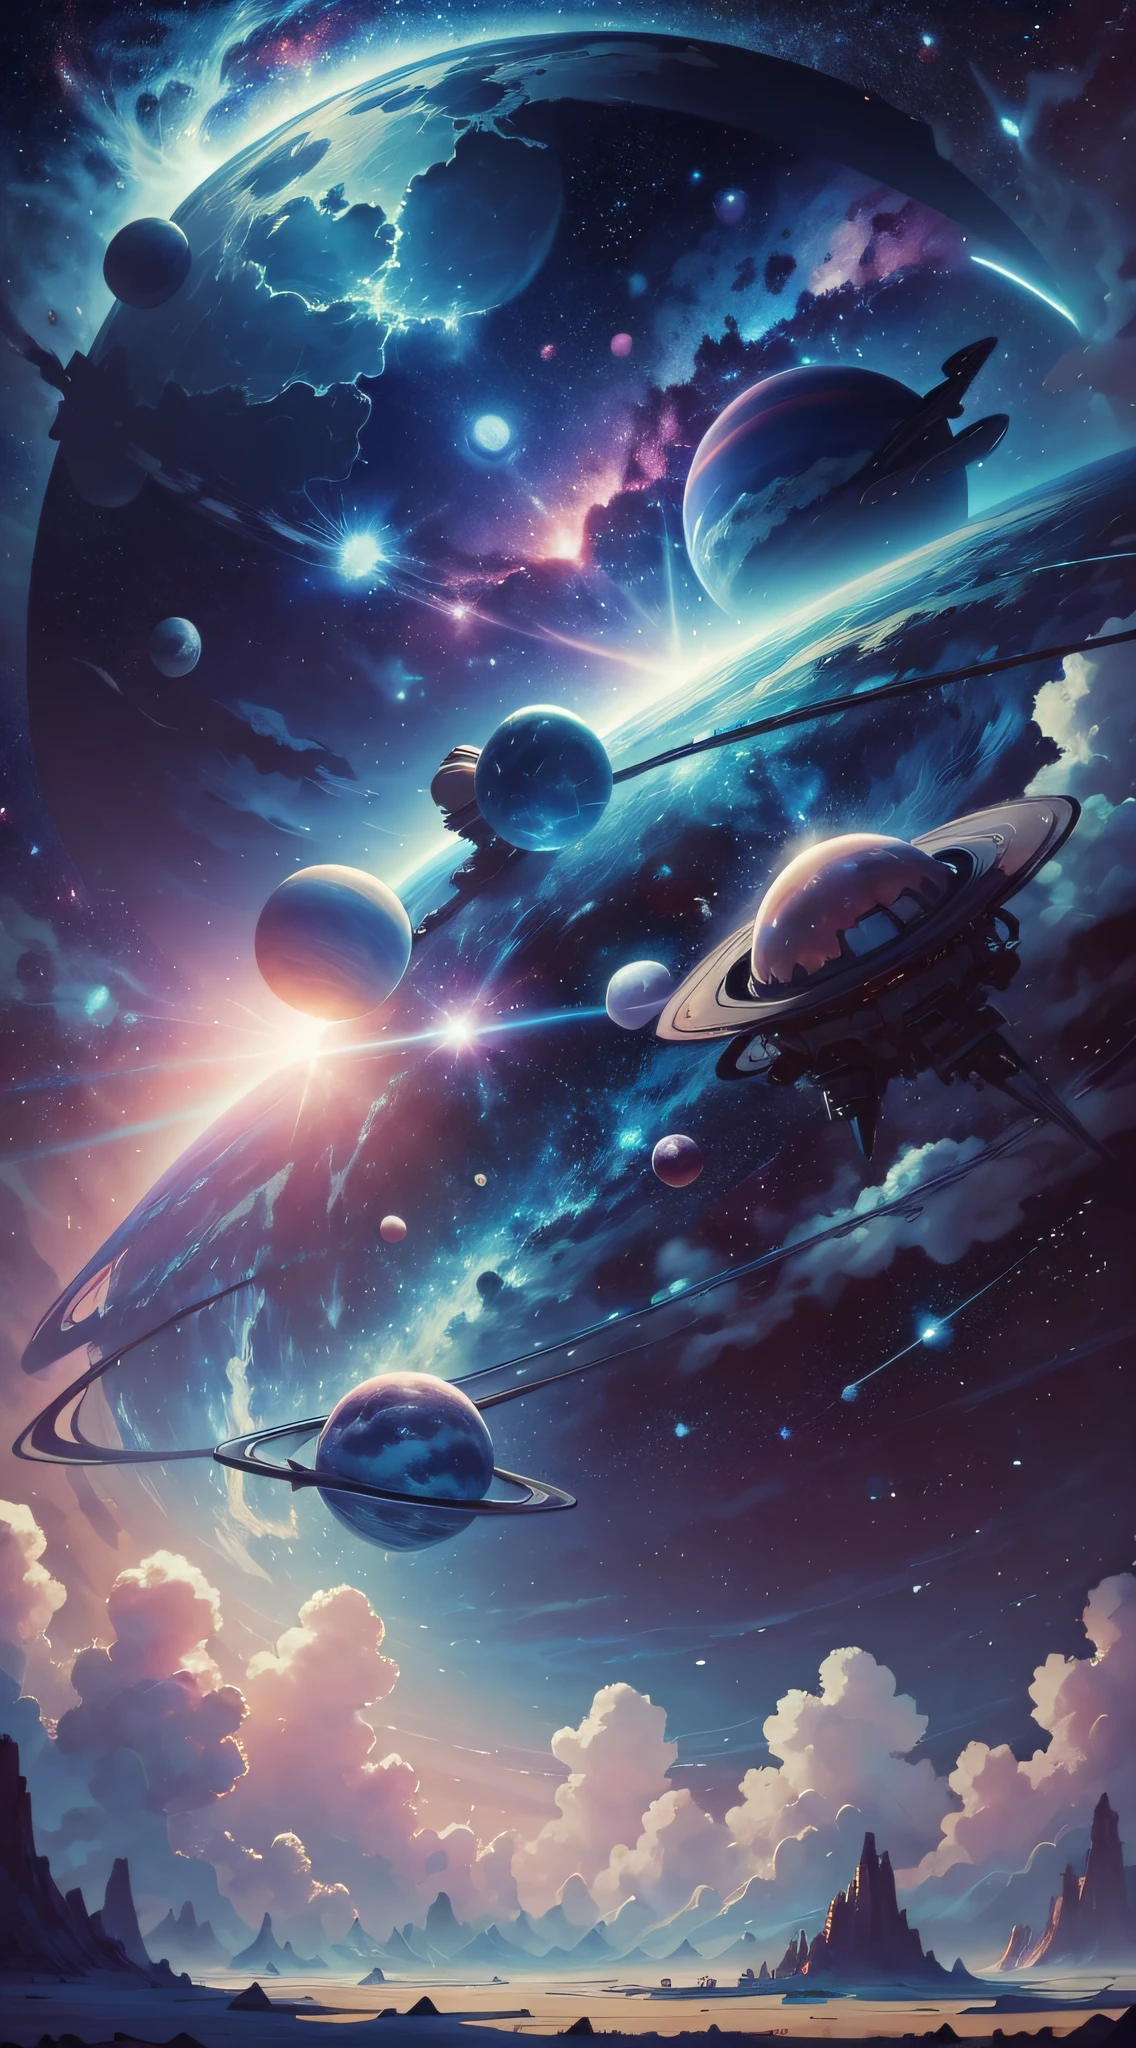 Weltraum mit allen Planeten in Blau und Rosa mit leuchtend weißen Sternen im Hintergrund im Stil von Miyazaki, – mit 21:9 --auto --s2